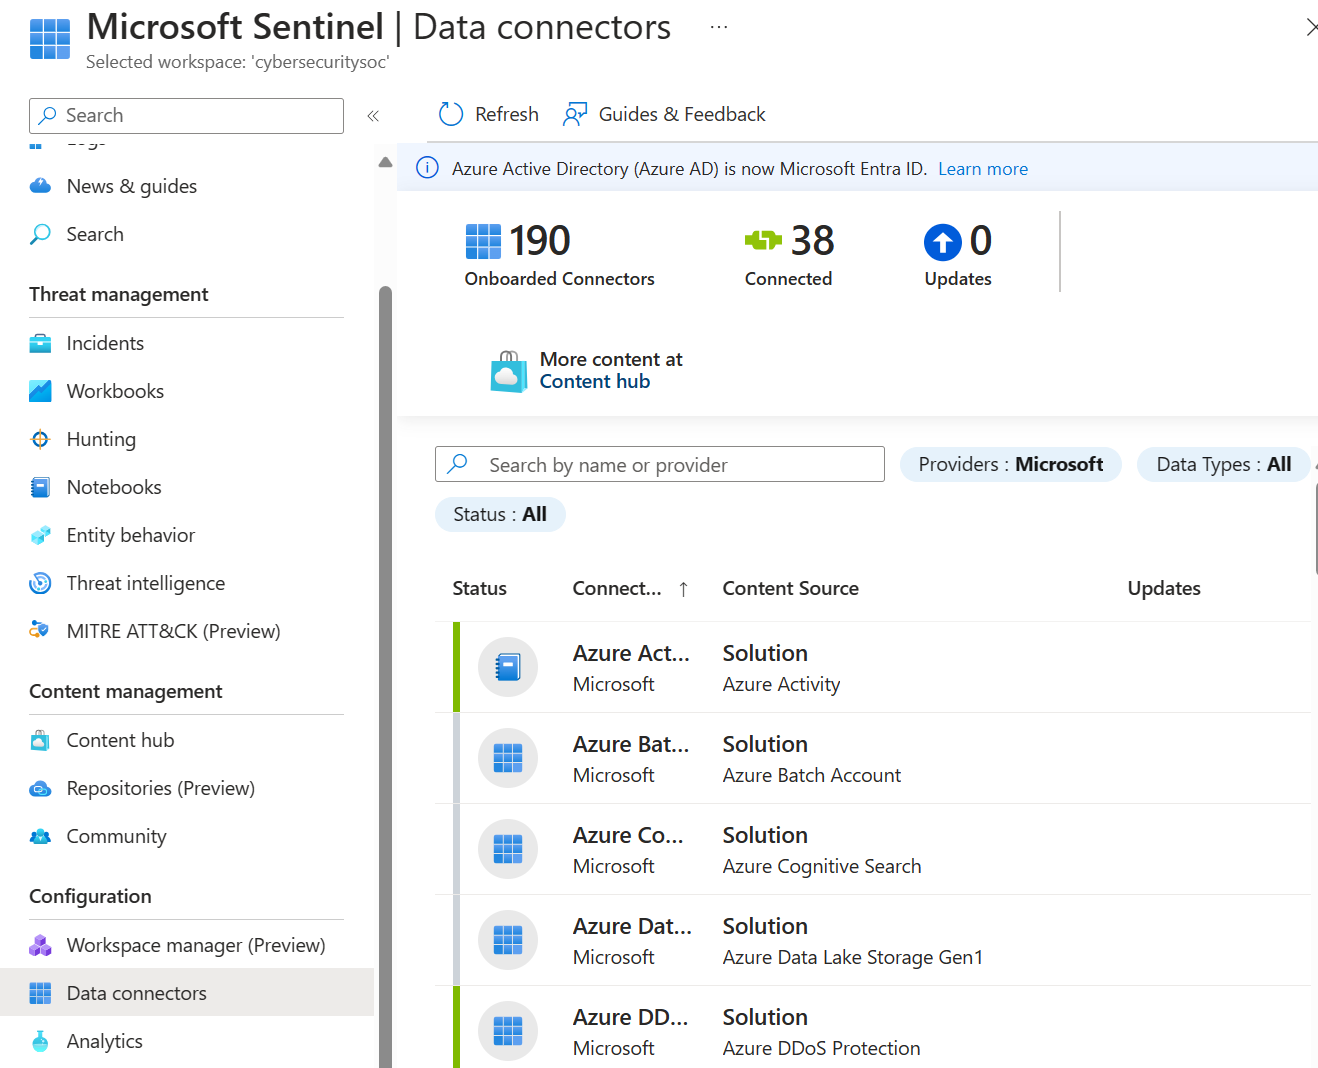 Снимок экрана: страница соединителей данных в Microsoft Sentinel, на которой показан список доступных соединителей.